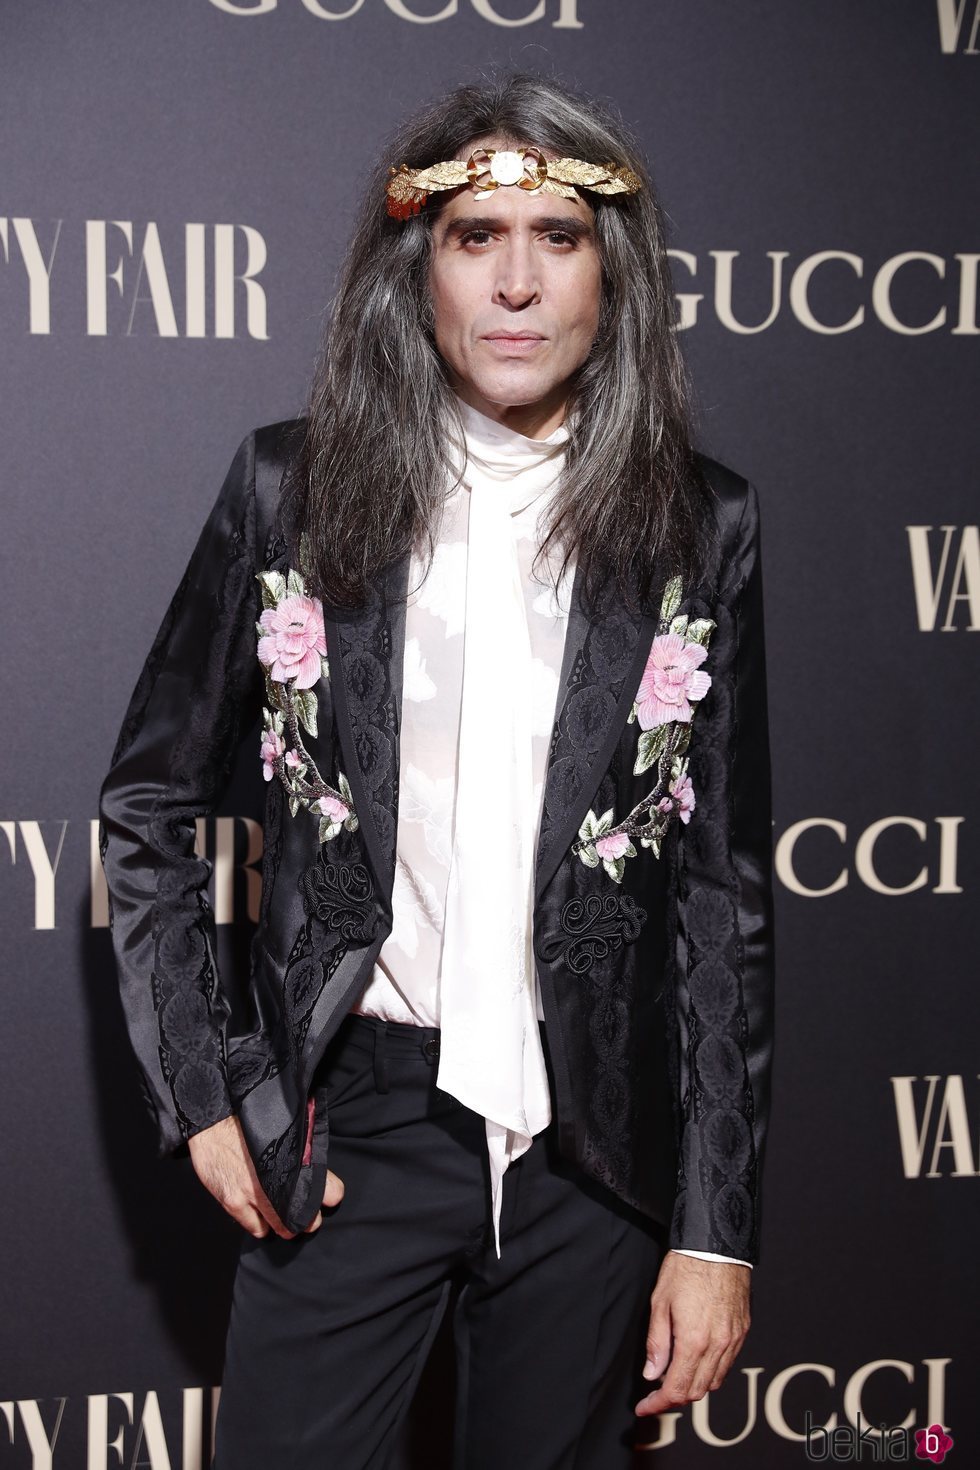 Mario Vaquerizo en la alfombra de la fiesta de Vanity Fair 2018